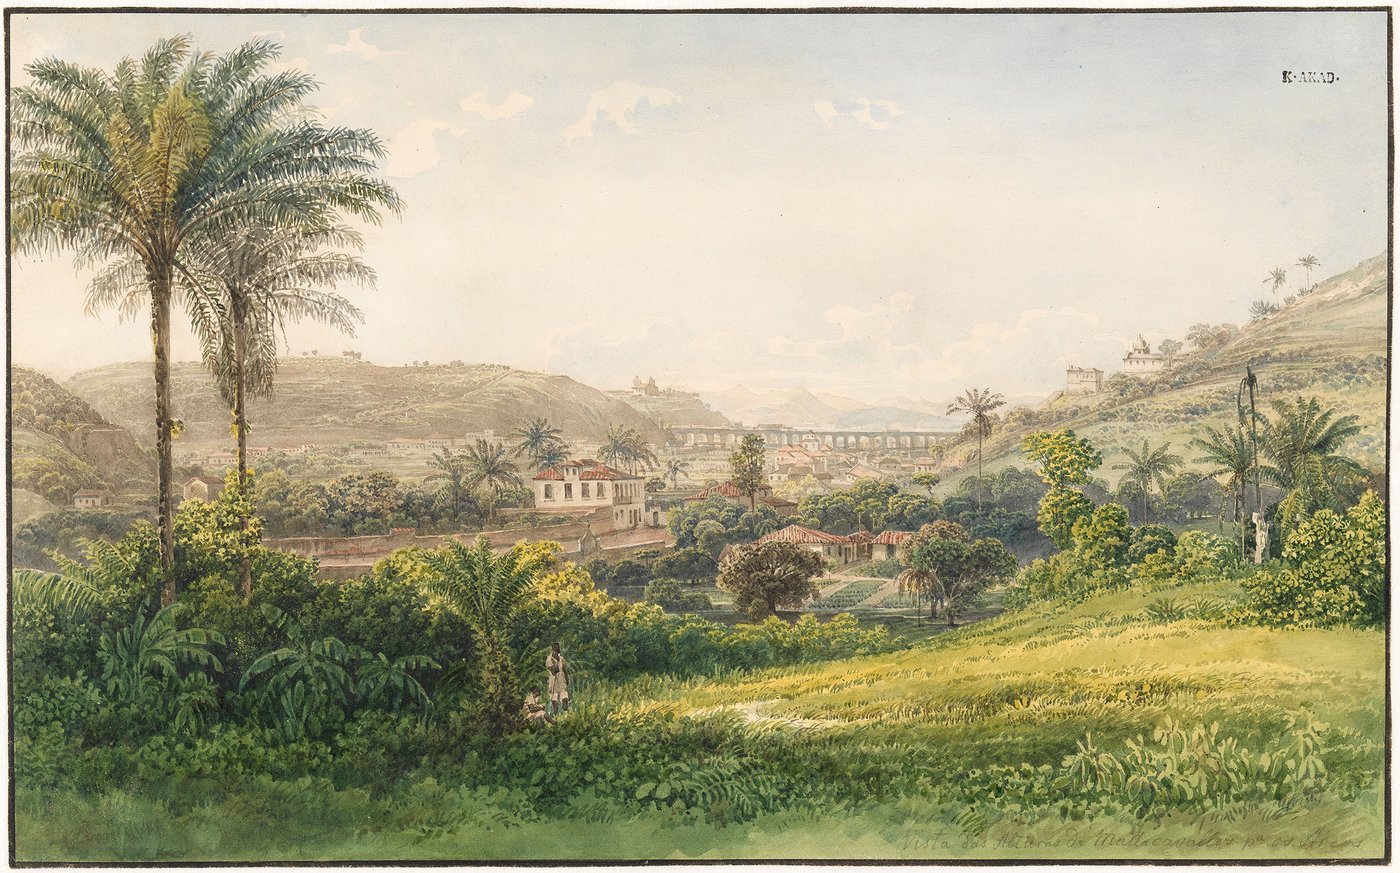 Dargestellt ist ein Blick auf die üppige tropische Landschaft und einige Gebäude von Rio de Janeiro. Zwischen den sanften, mit Palmen und Bananenstauden bewachsenen Hügeln rechts und links im Bild durchschneidet ein Aquädukt die Landschaft.